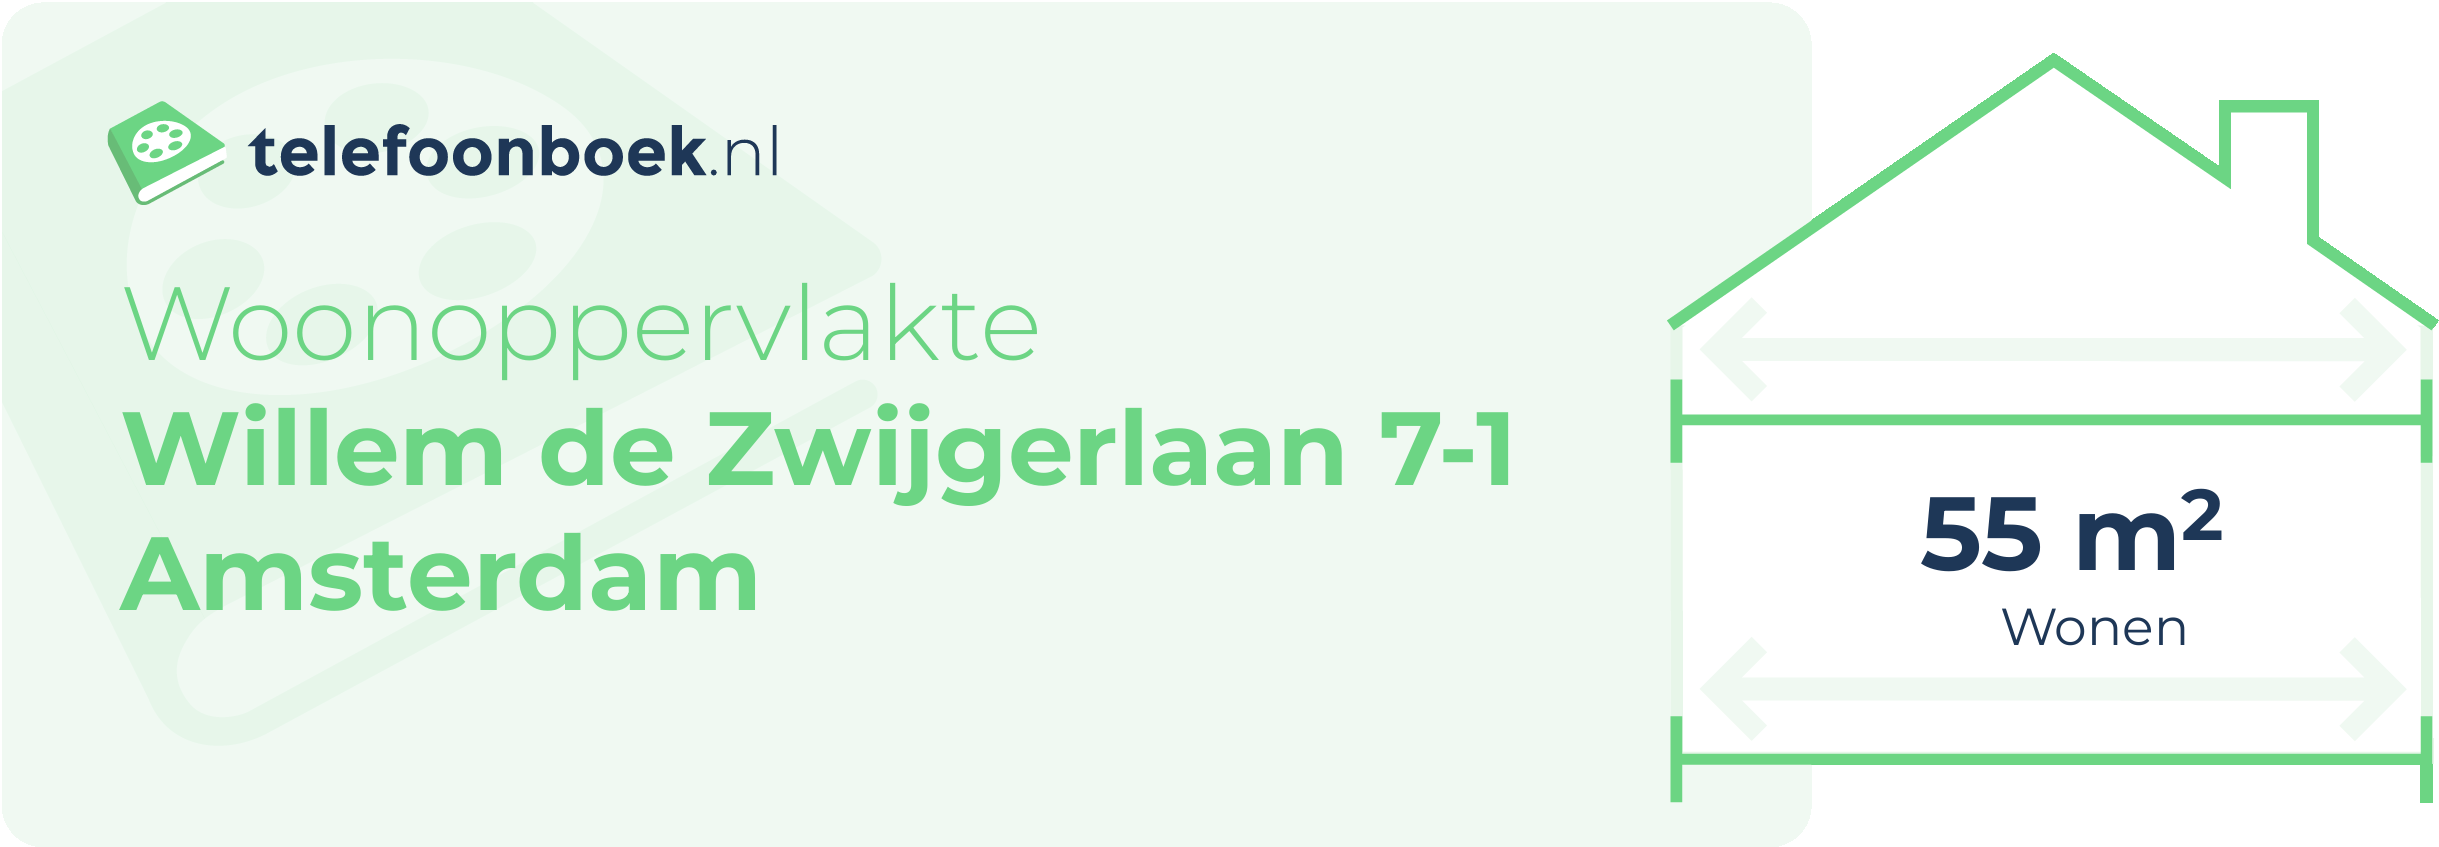 Woonoppervlakte Willem De Zwijgerlaan 7-1 Amsterdam